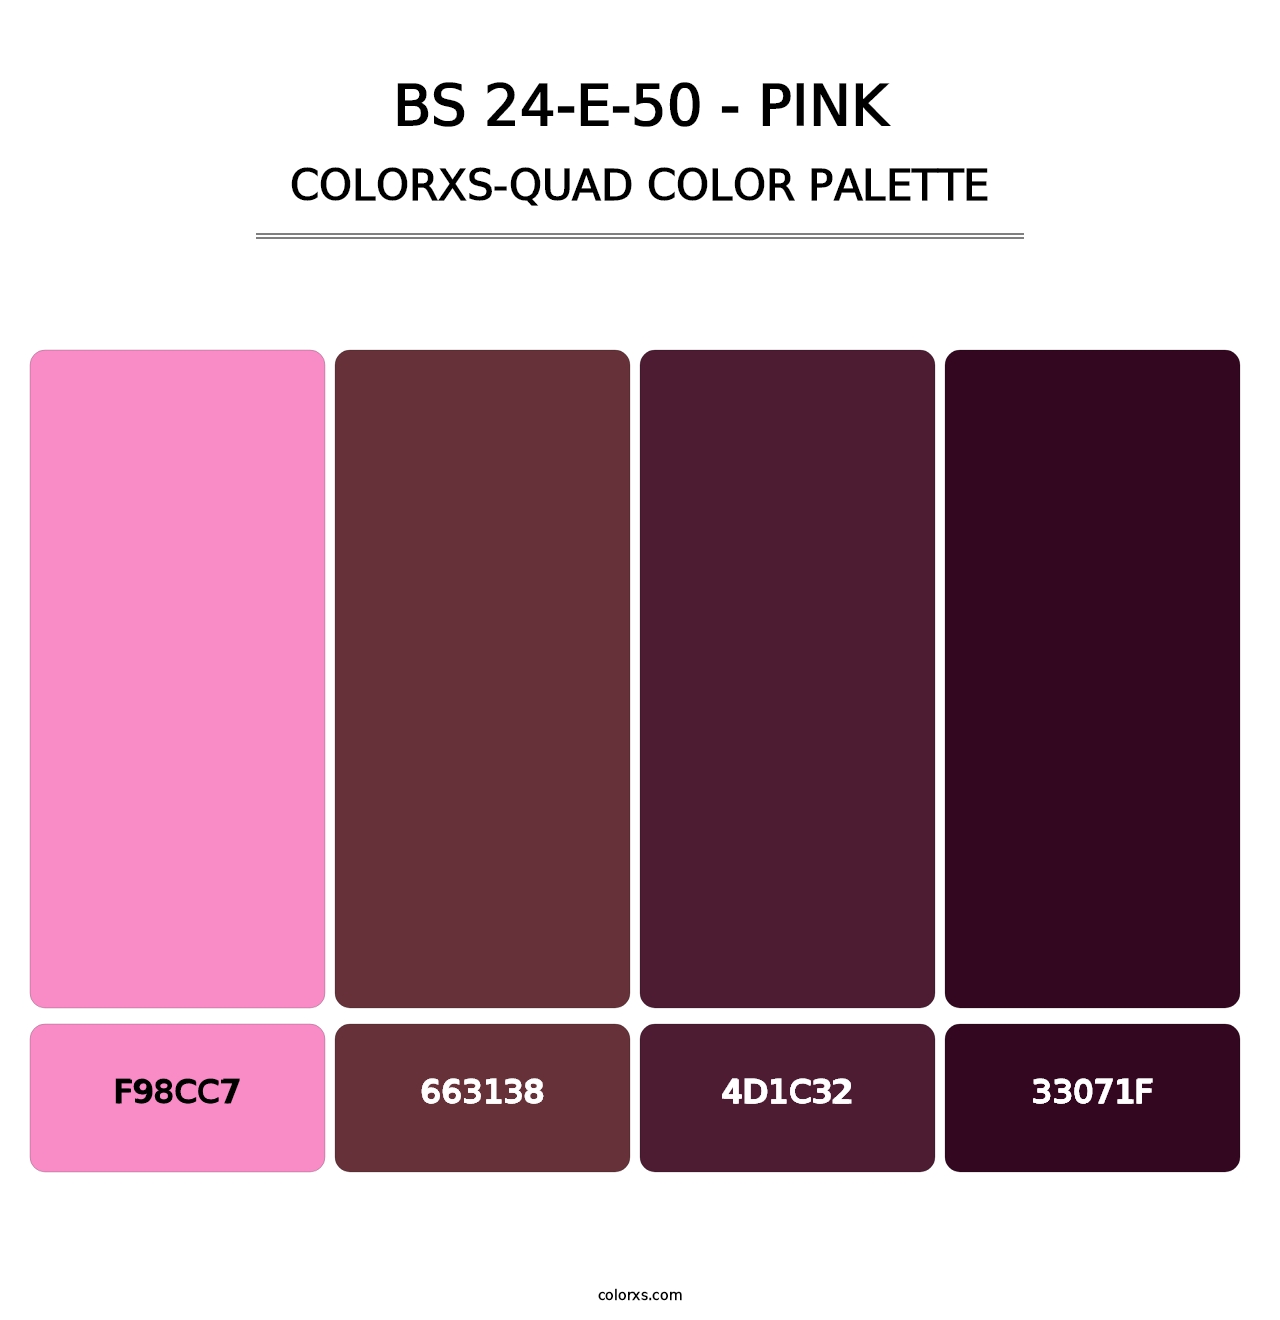 BS 24-E-50 - Pink - Colorxs Quad Palette